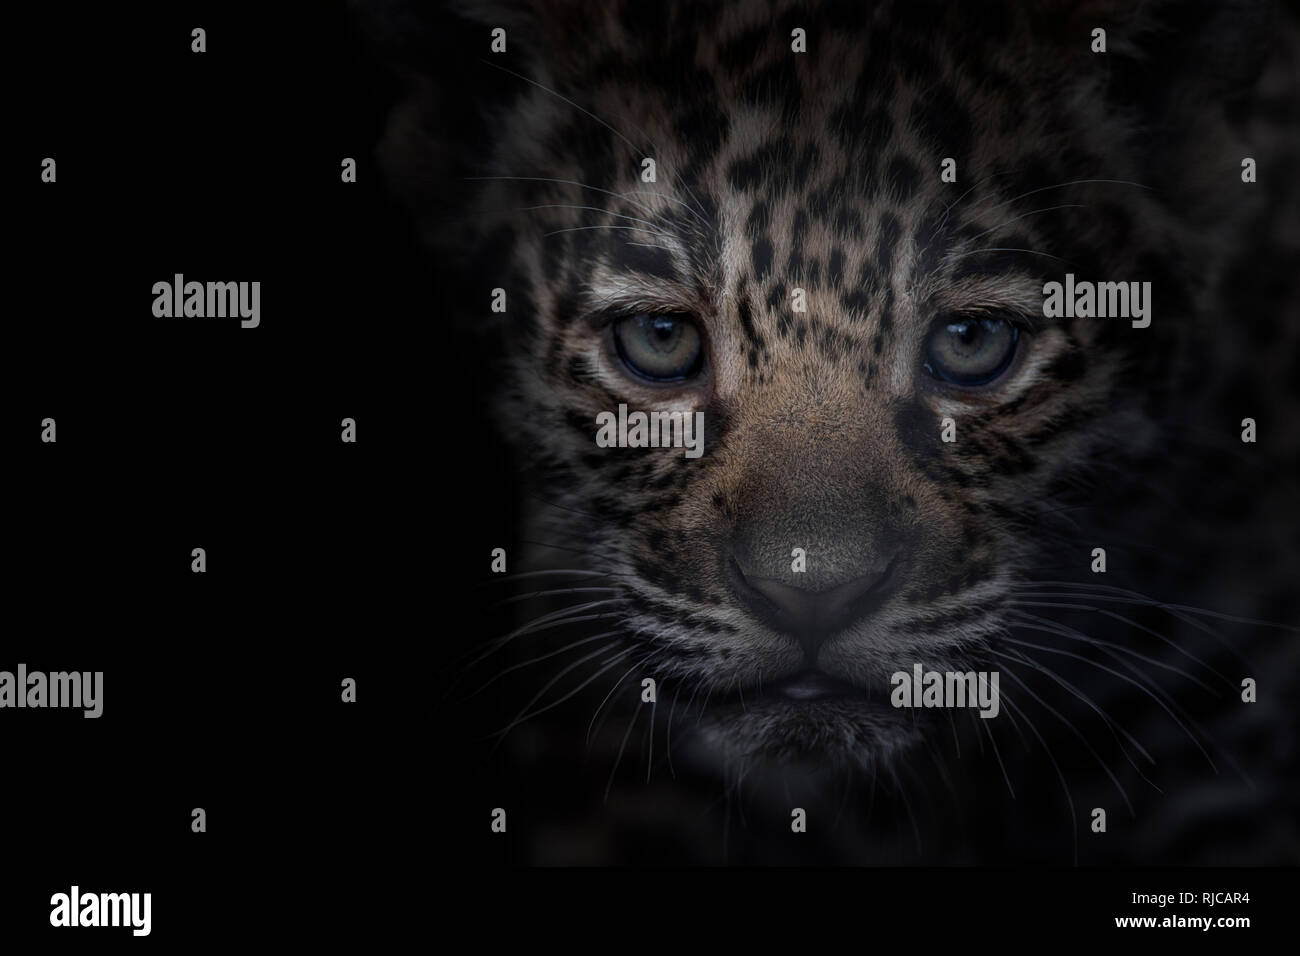 cute jaguar cub, portrait Stock Photo